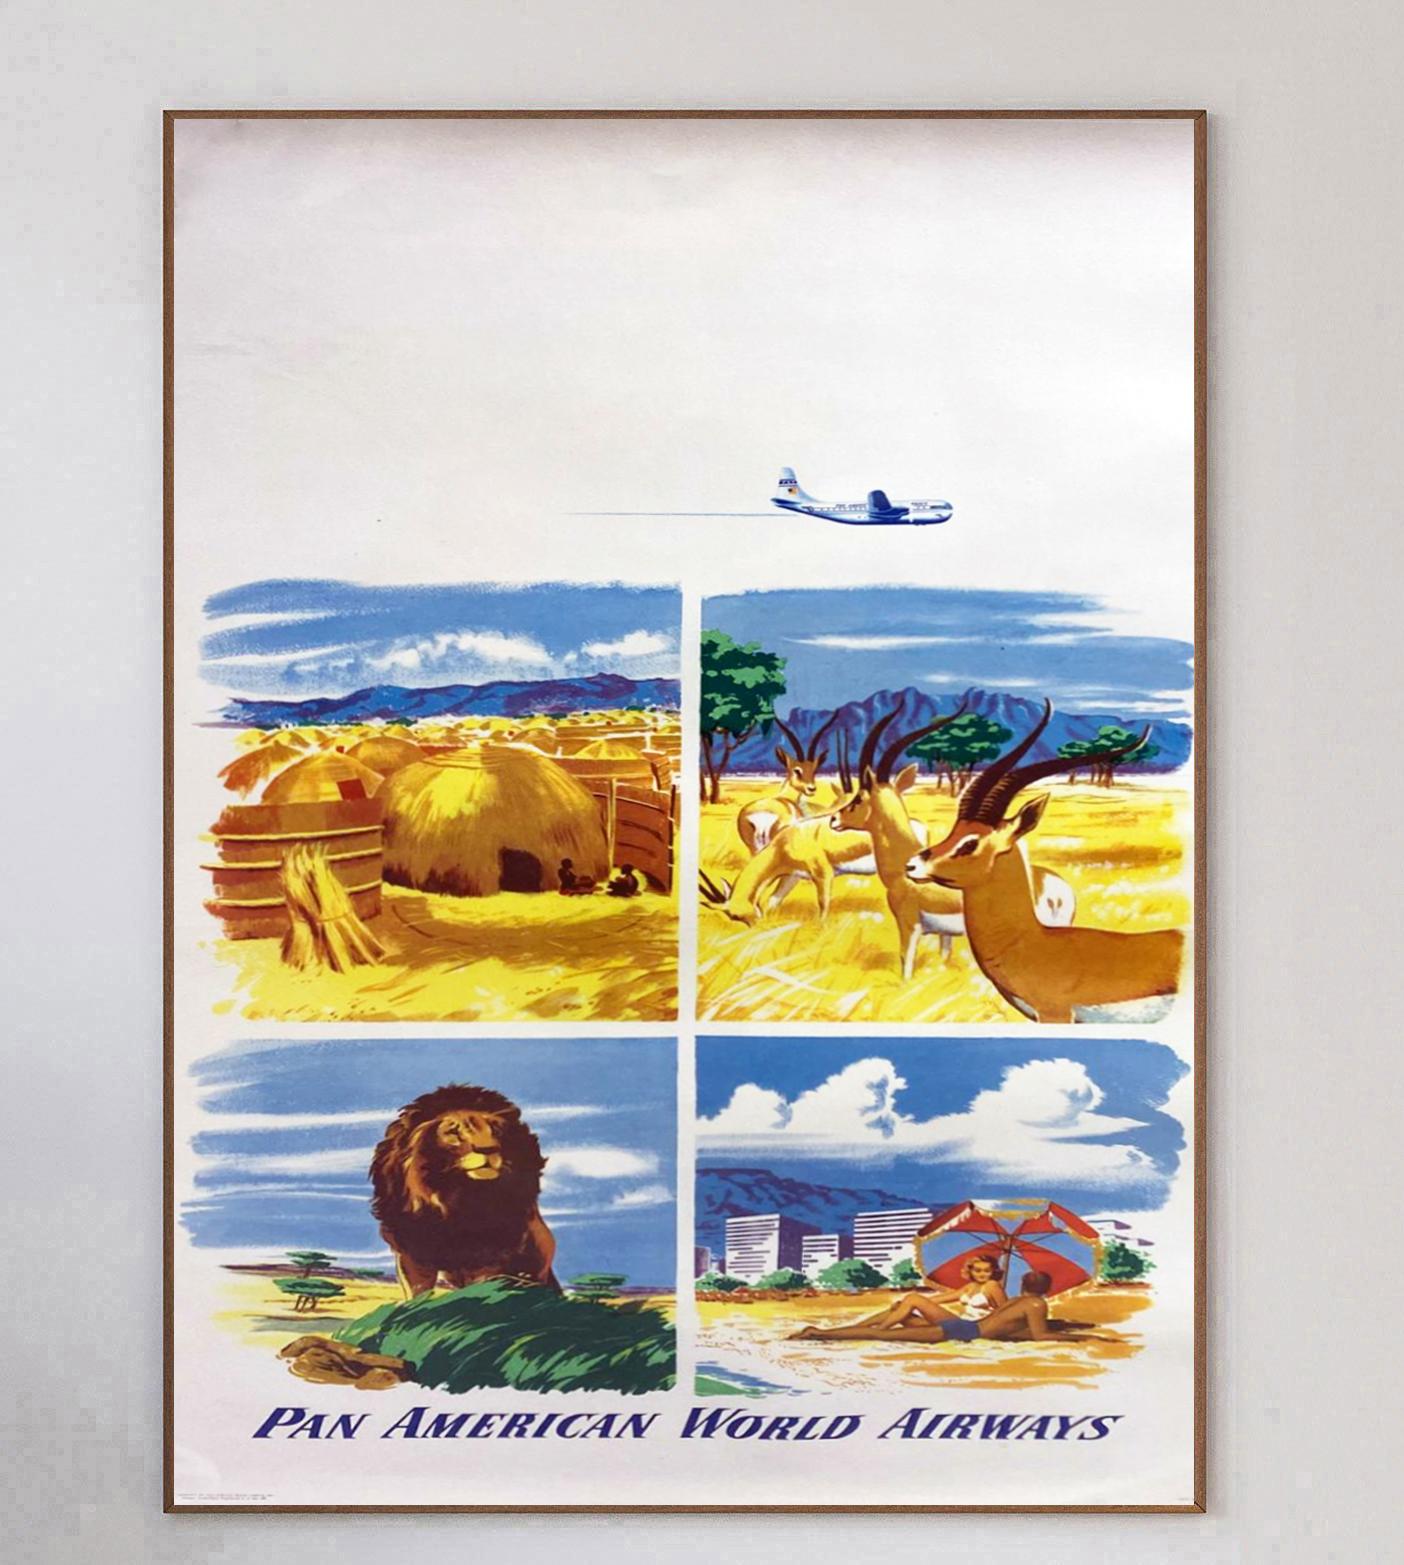 Magnifique et rare affiche créée en 1951 pour Pan American World Airways, plus connue sous le nom de Pan Am. Décrivant quatre magnifiques scènes de vie sauvage dans une réserve naturelle, un village local et une station balnéaire, cette affiche